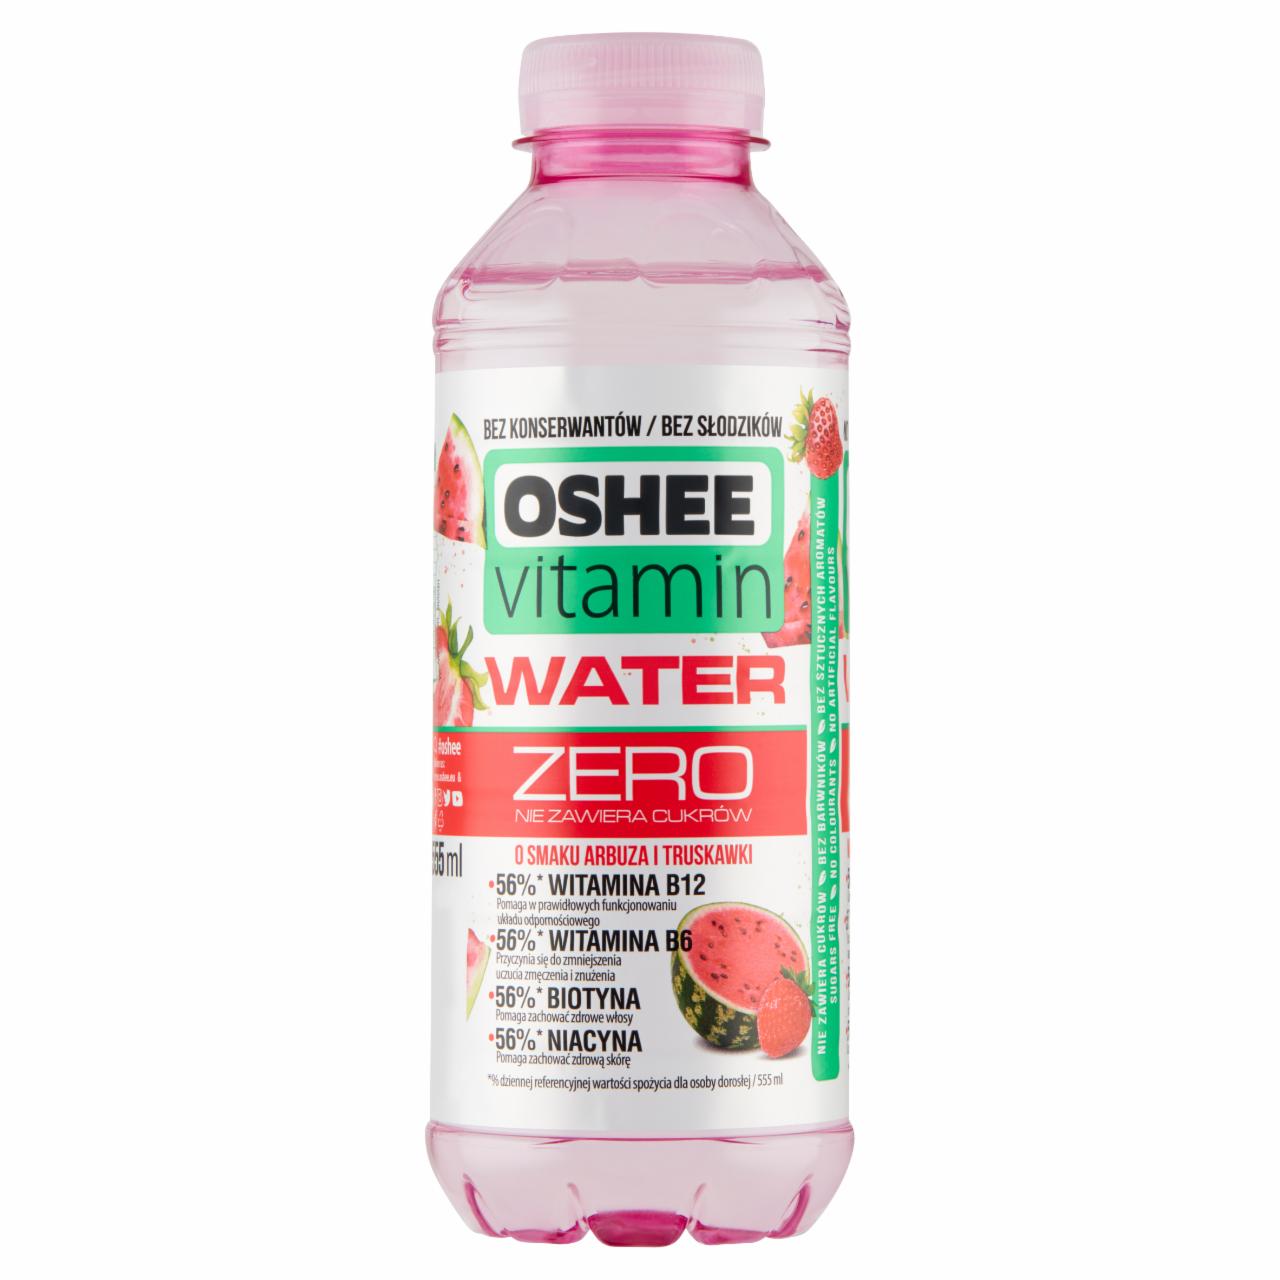 Zdjęcia - Oshee Vitamin Water Zero Niegazowany napój o smaku arbuza i truskawki 555 ml